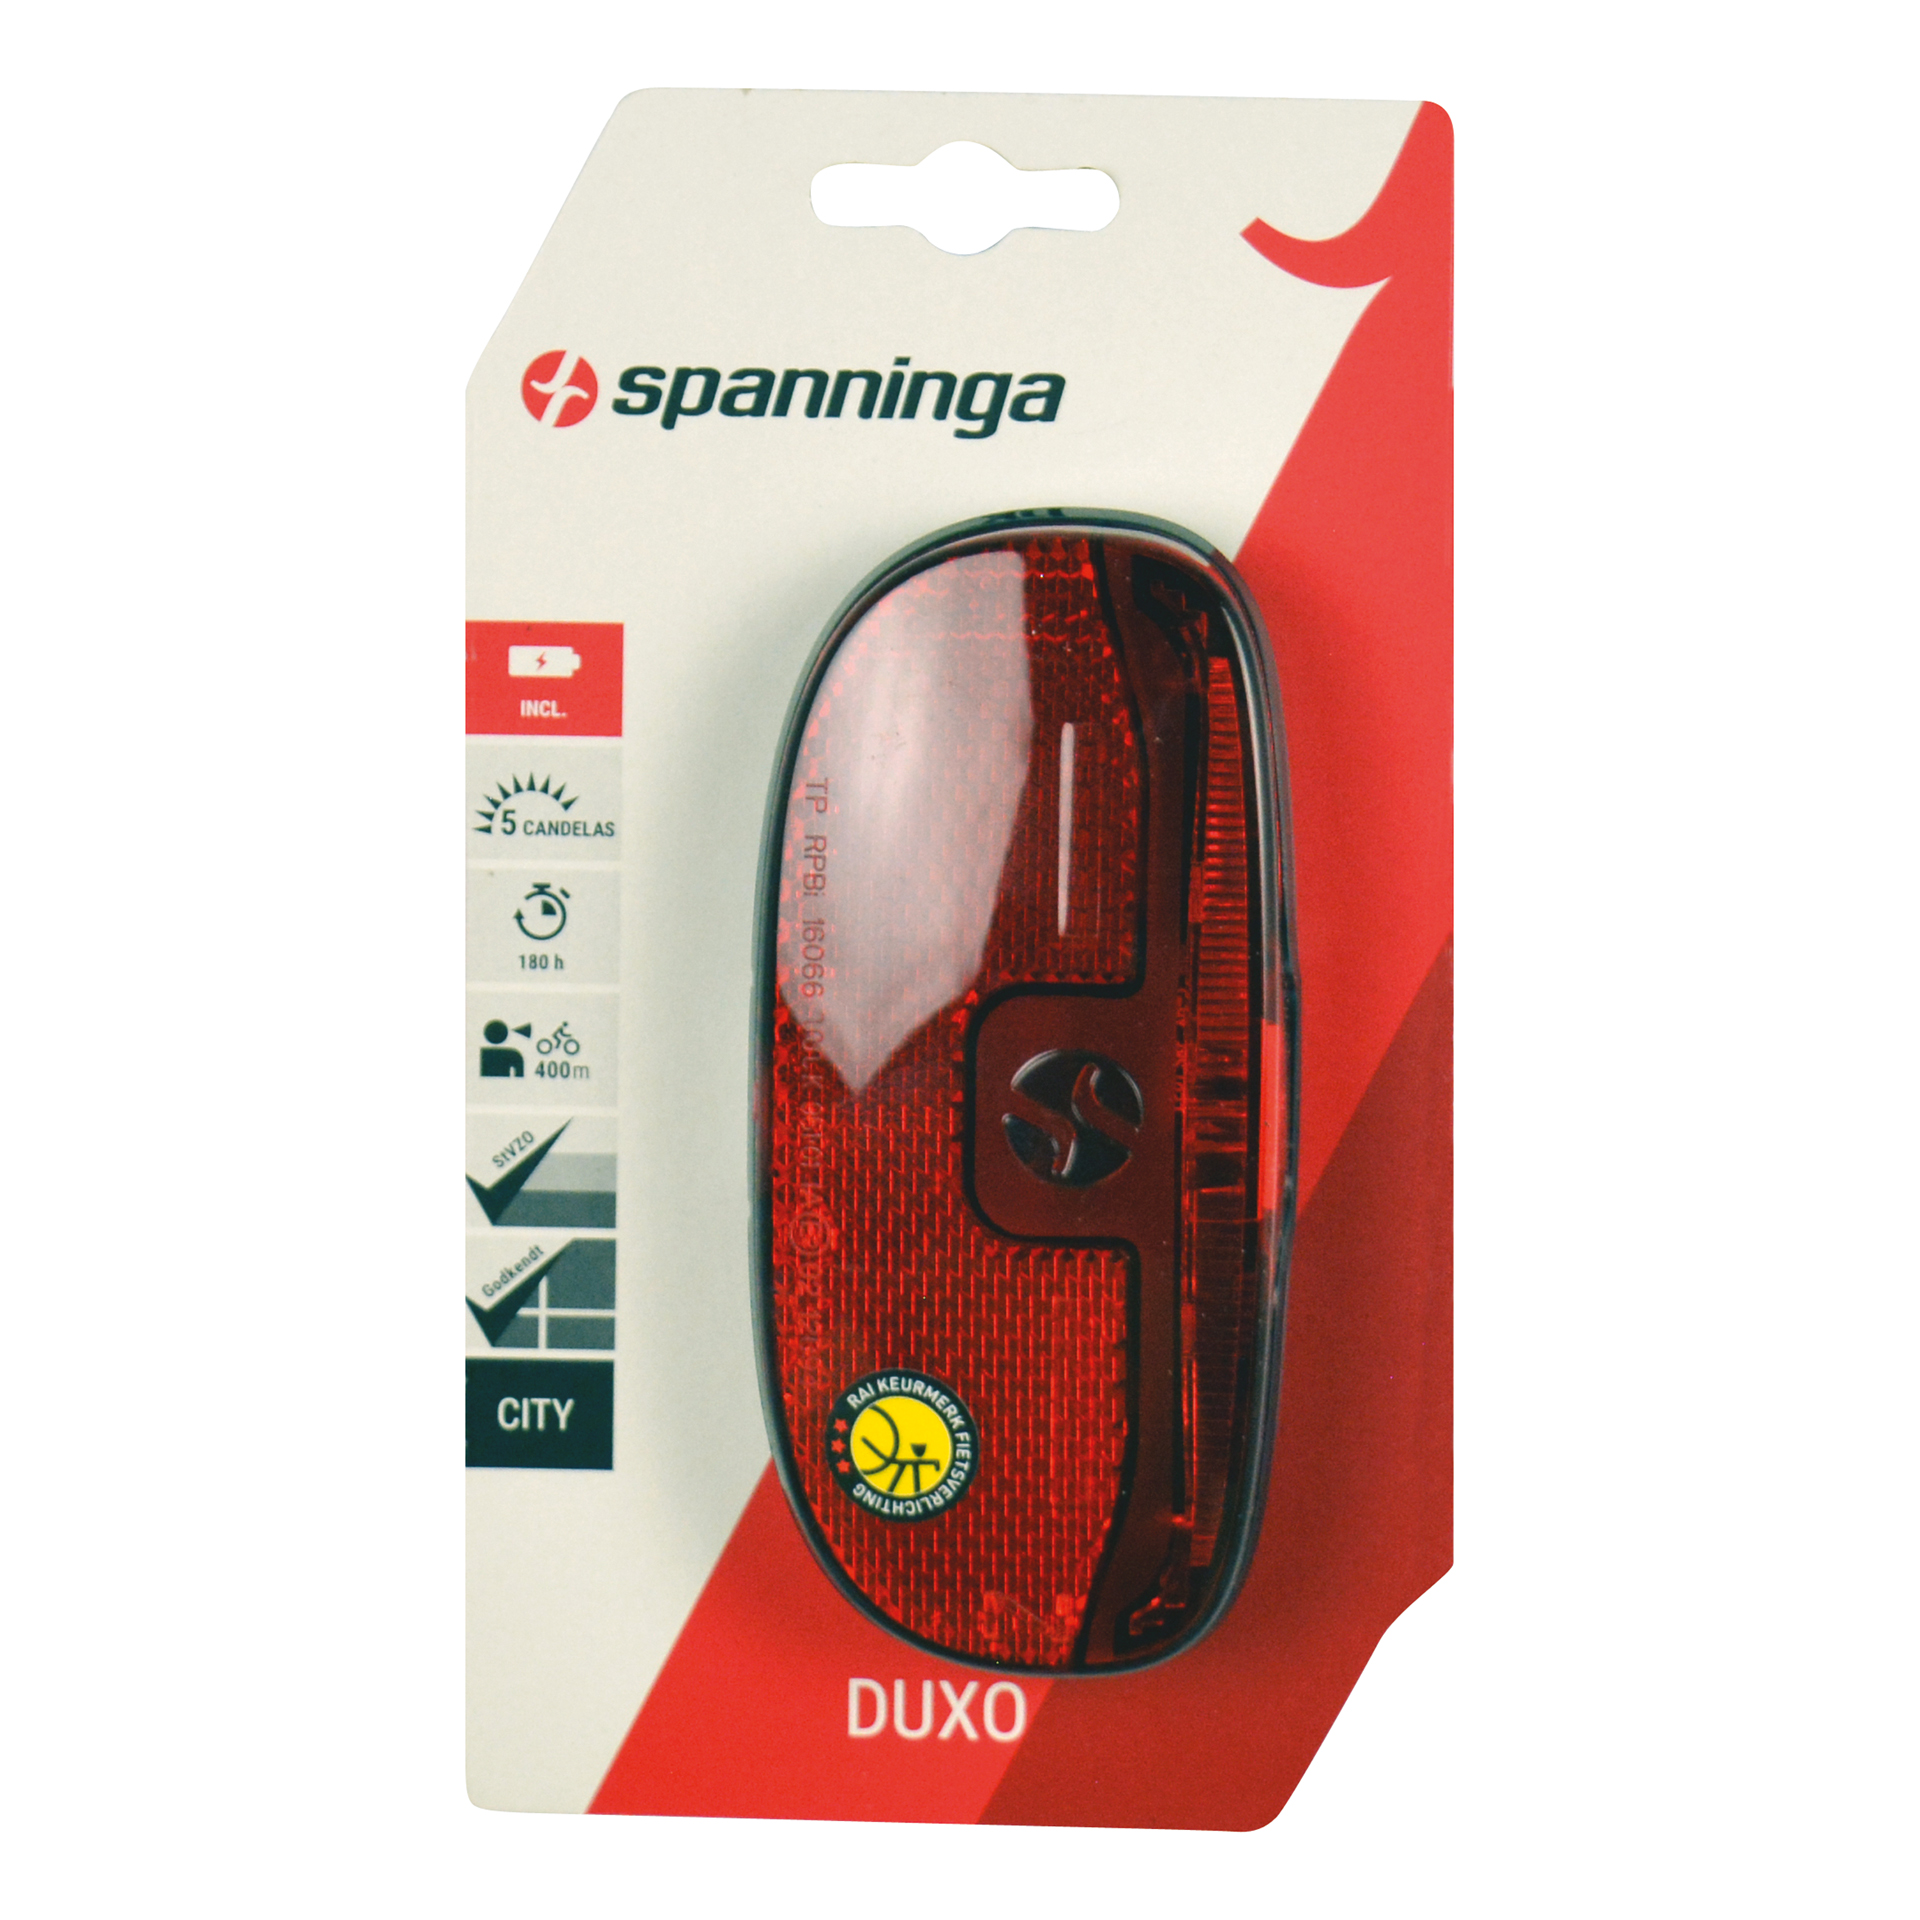 Spanninga Spanninga Achterlicht Duxo batterij 5036213